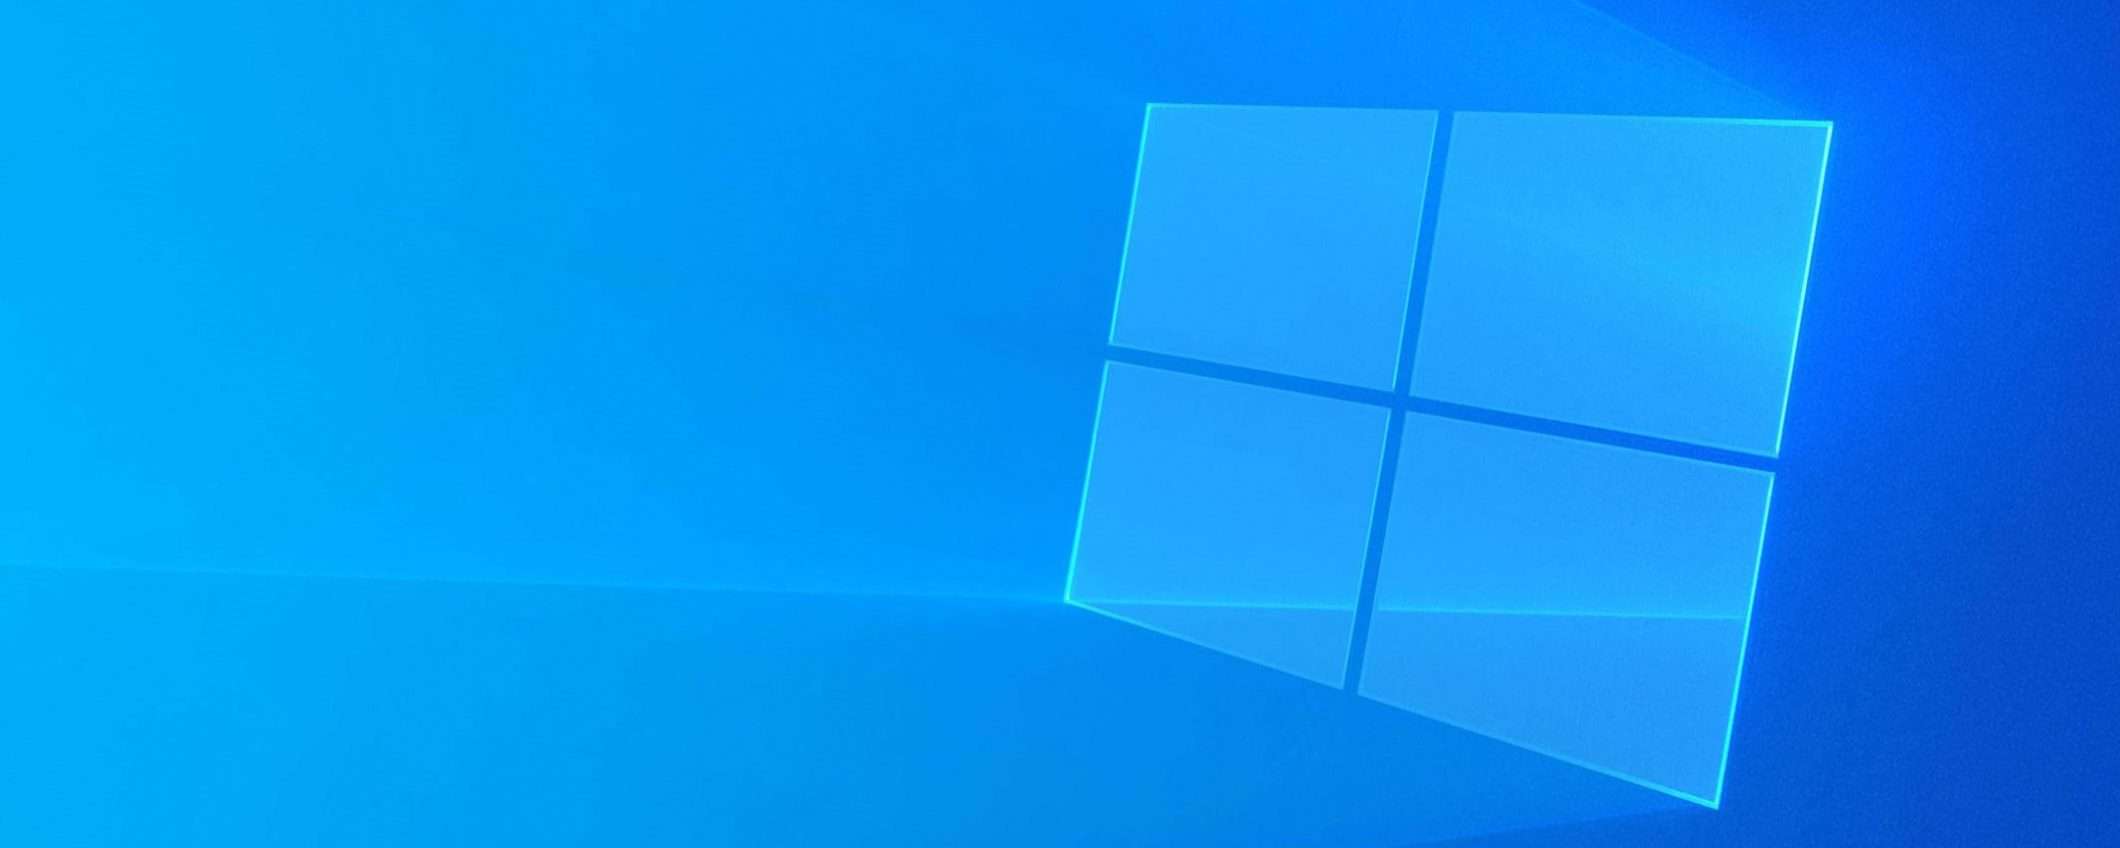 Windows 10: nuovi dettagli sull'interfaccia Sun Valley